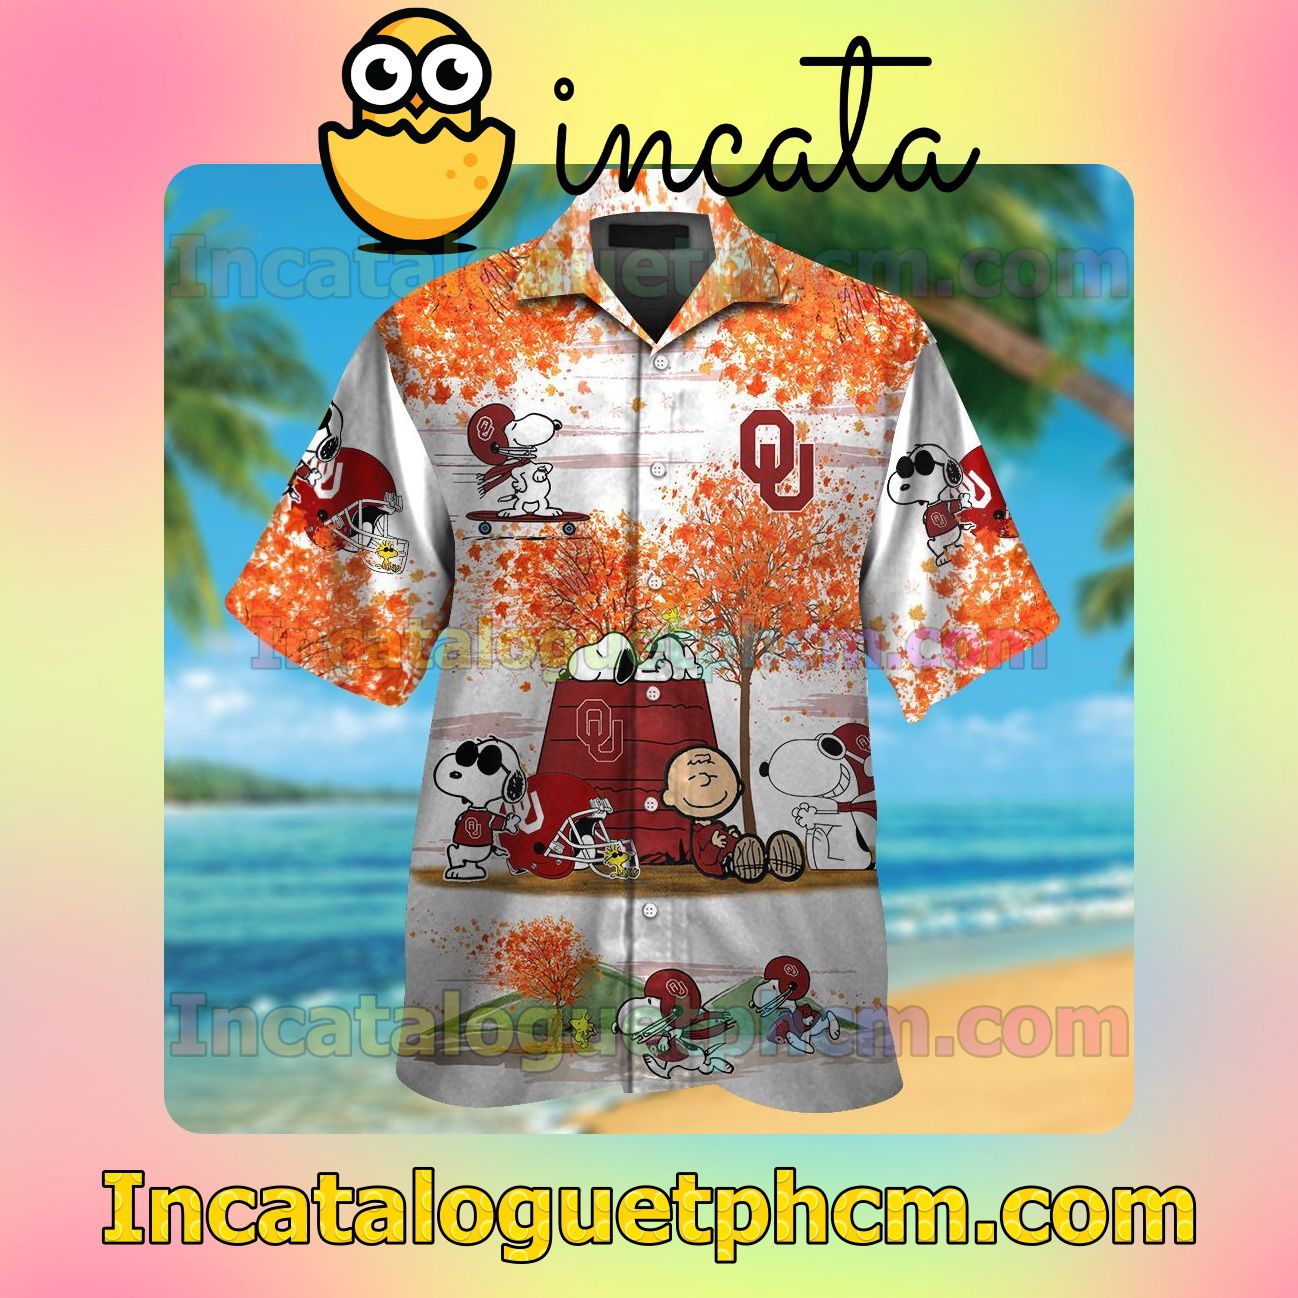 Oklahoma Sooners Snoopy Autumn Beach Vacation Shirt, Swim Shorts